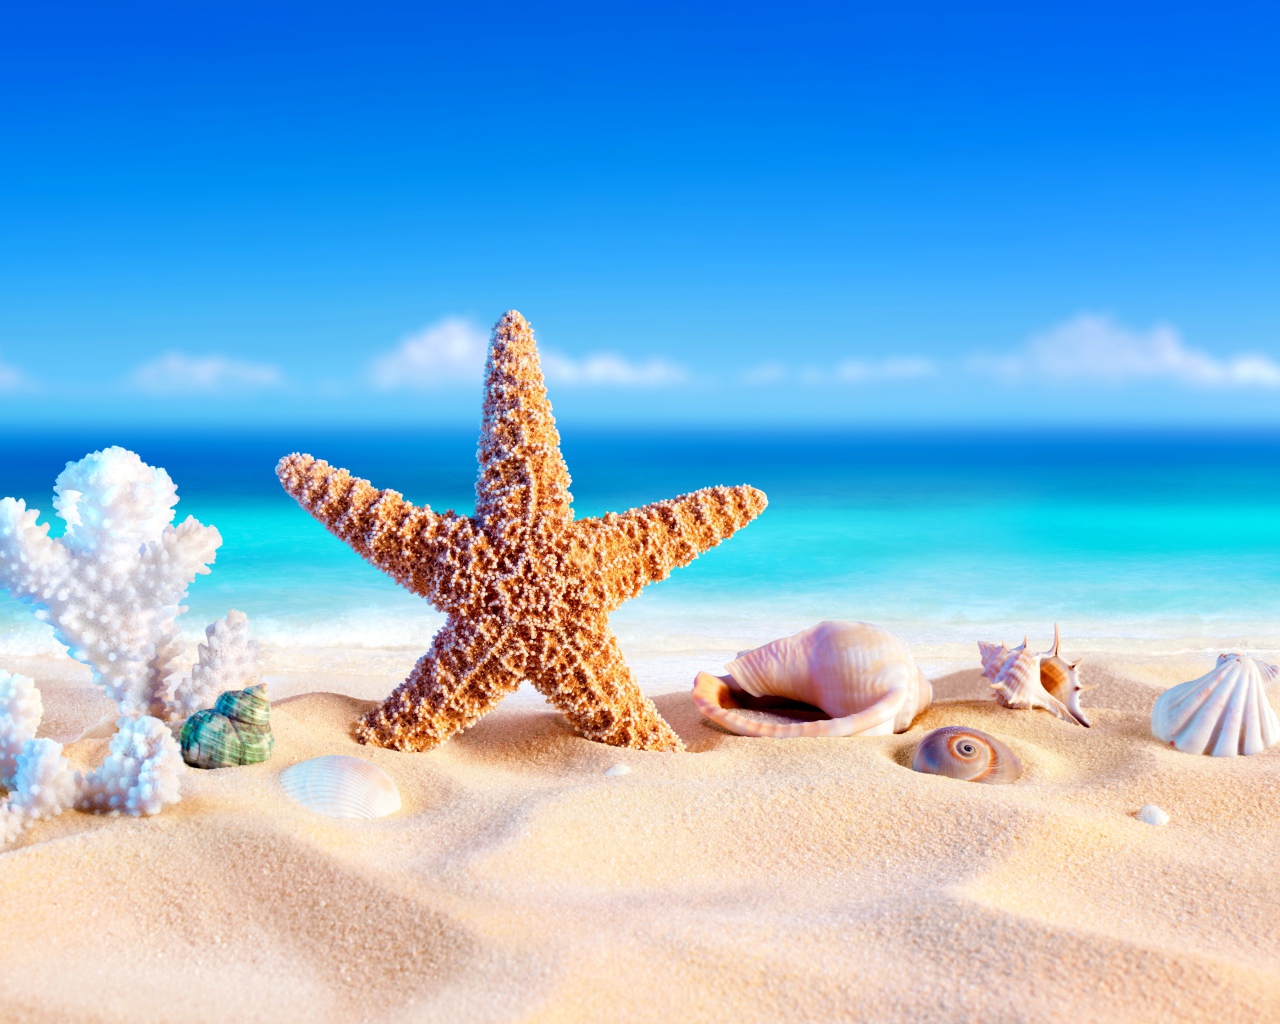 Оранжевая морская звезда, коралл  и ракушки на песке у моря летом